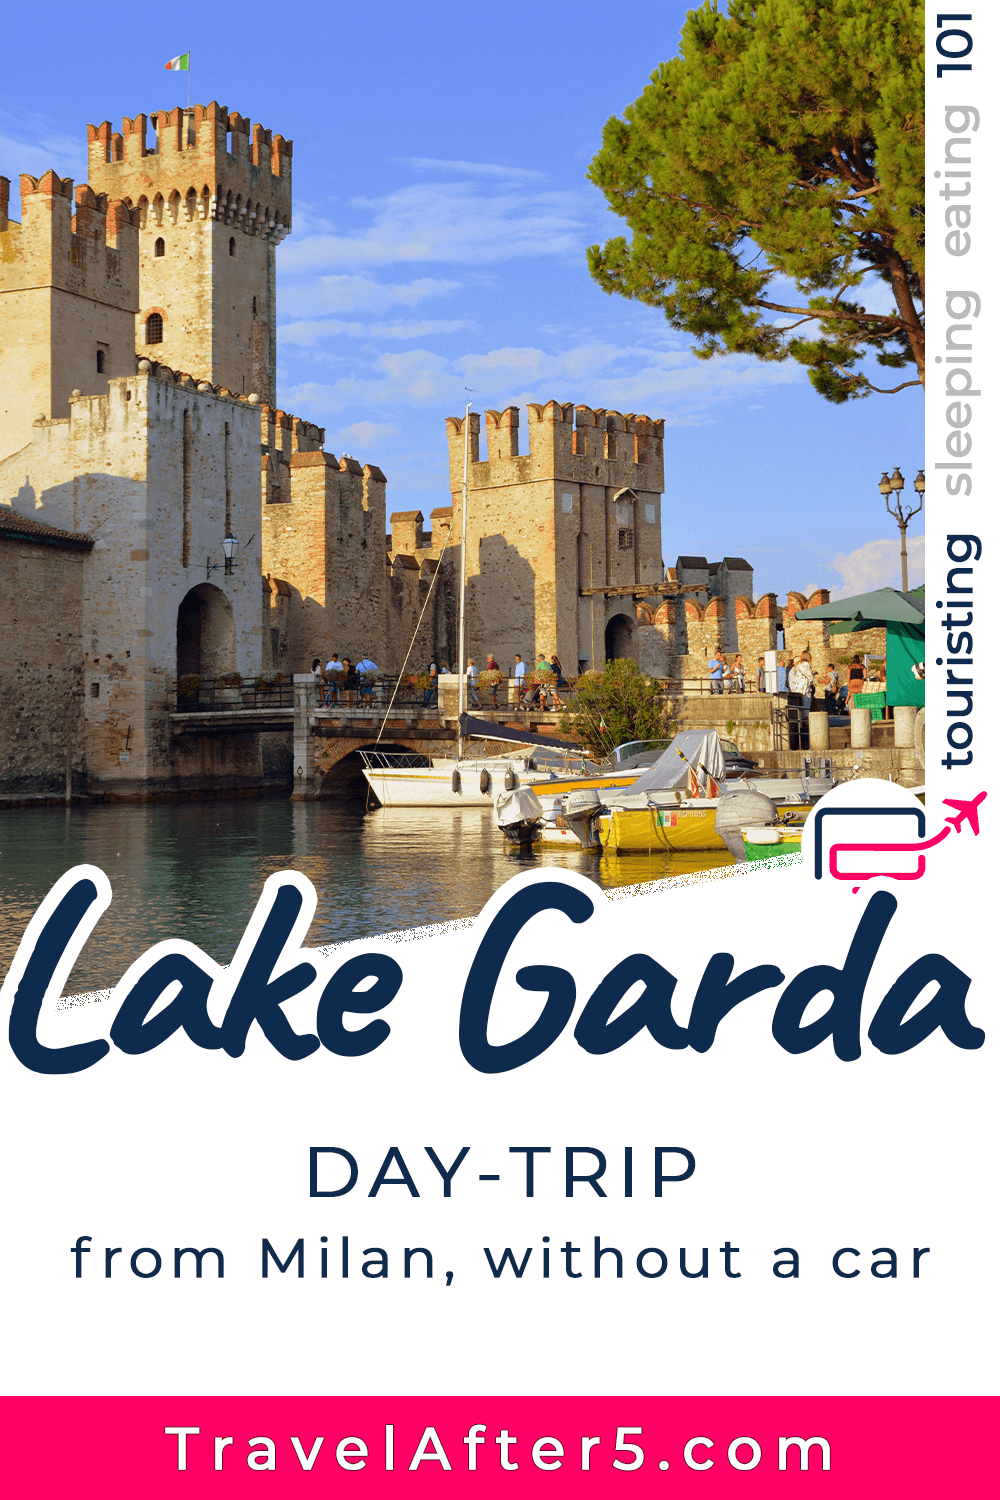 Pinterest Pin_Lake Garda Day-Trip, by Travel After 5